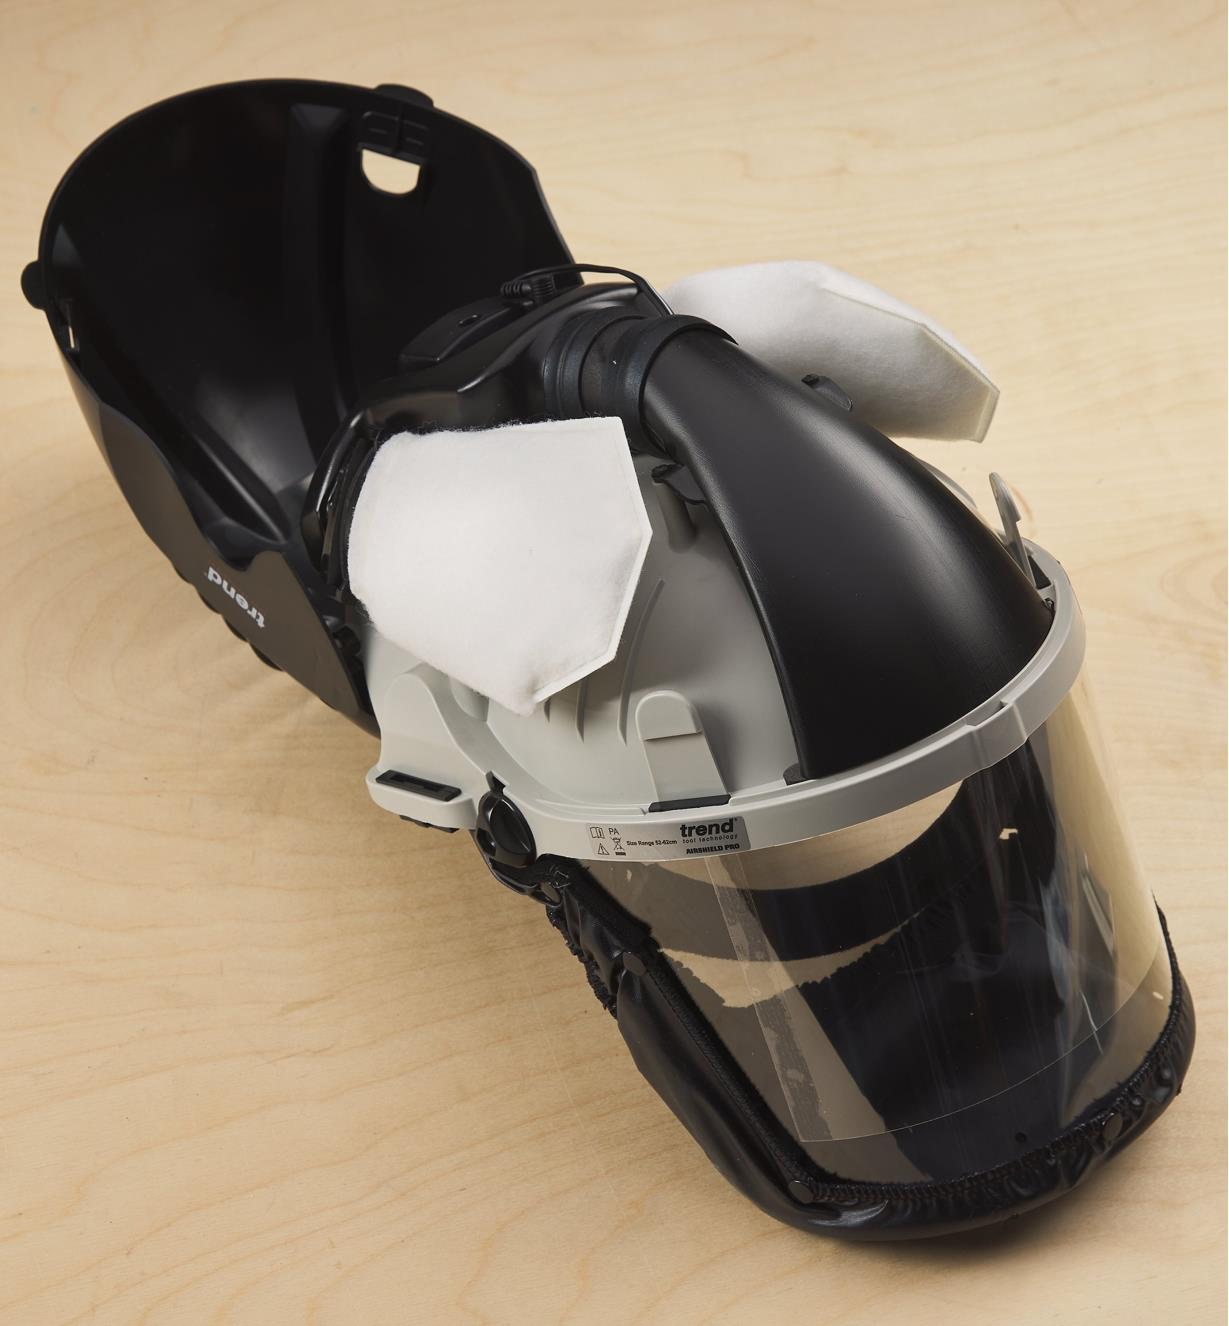 Dual dust filters inside an open helmet